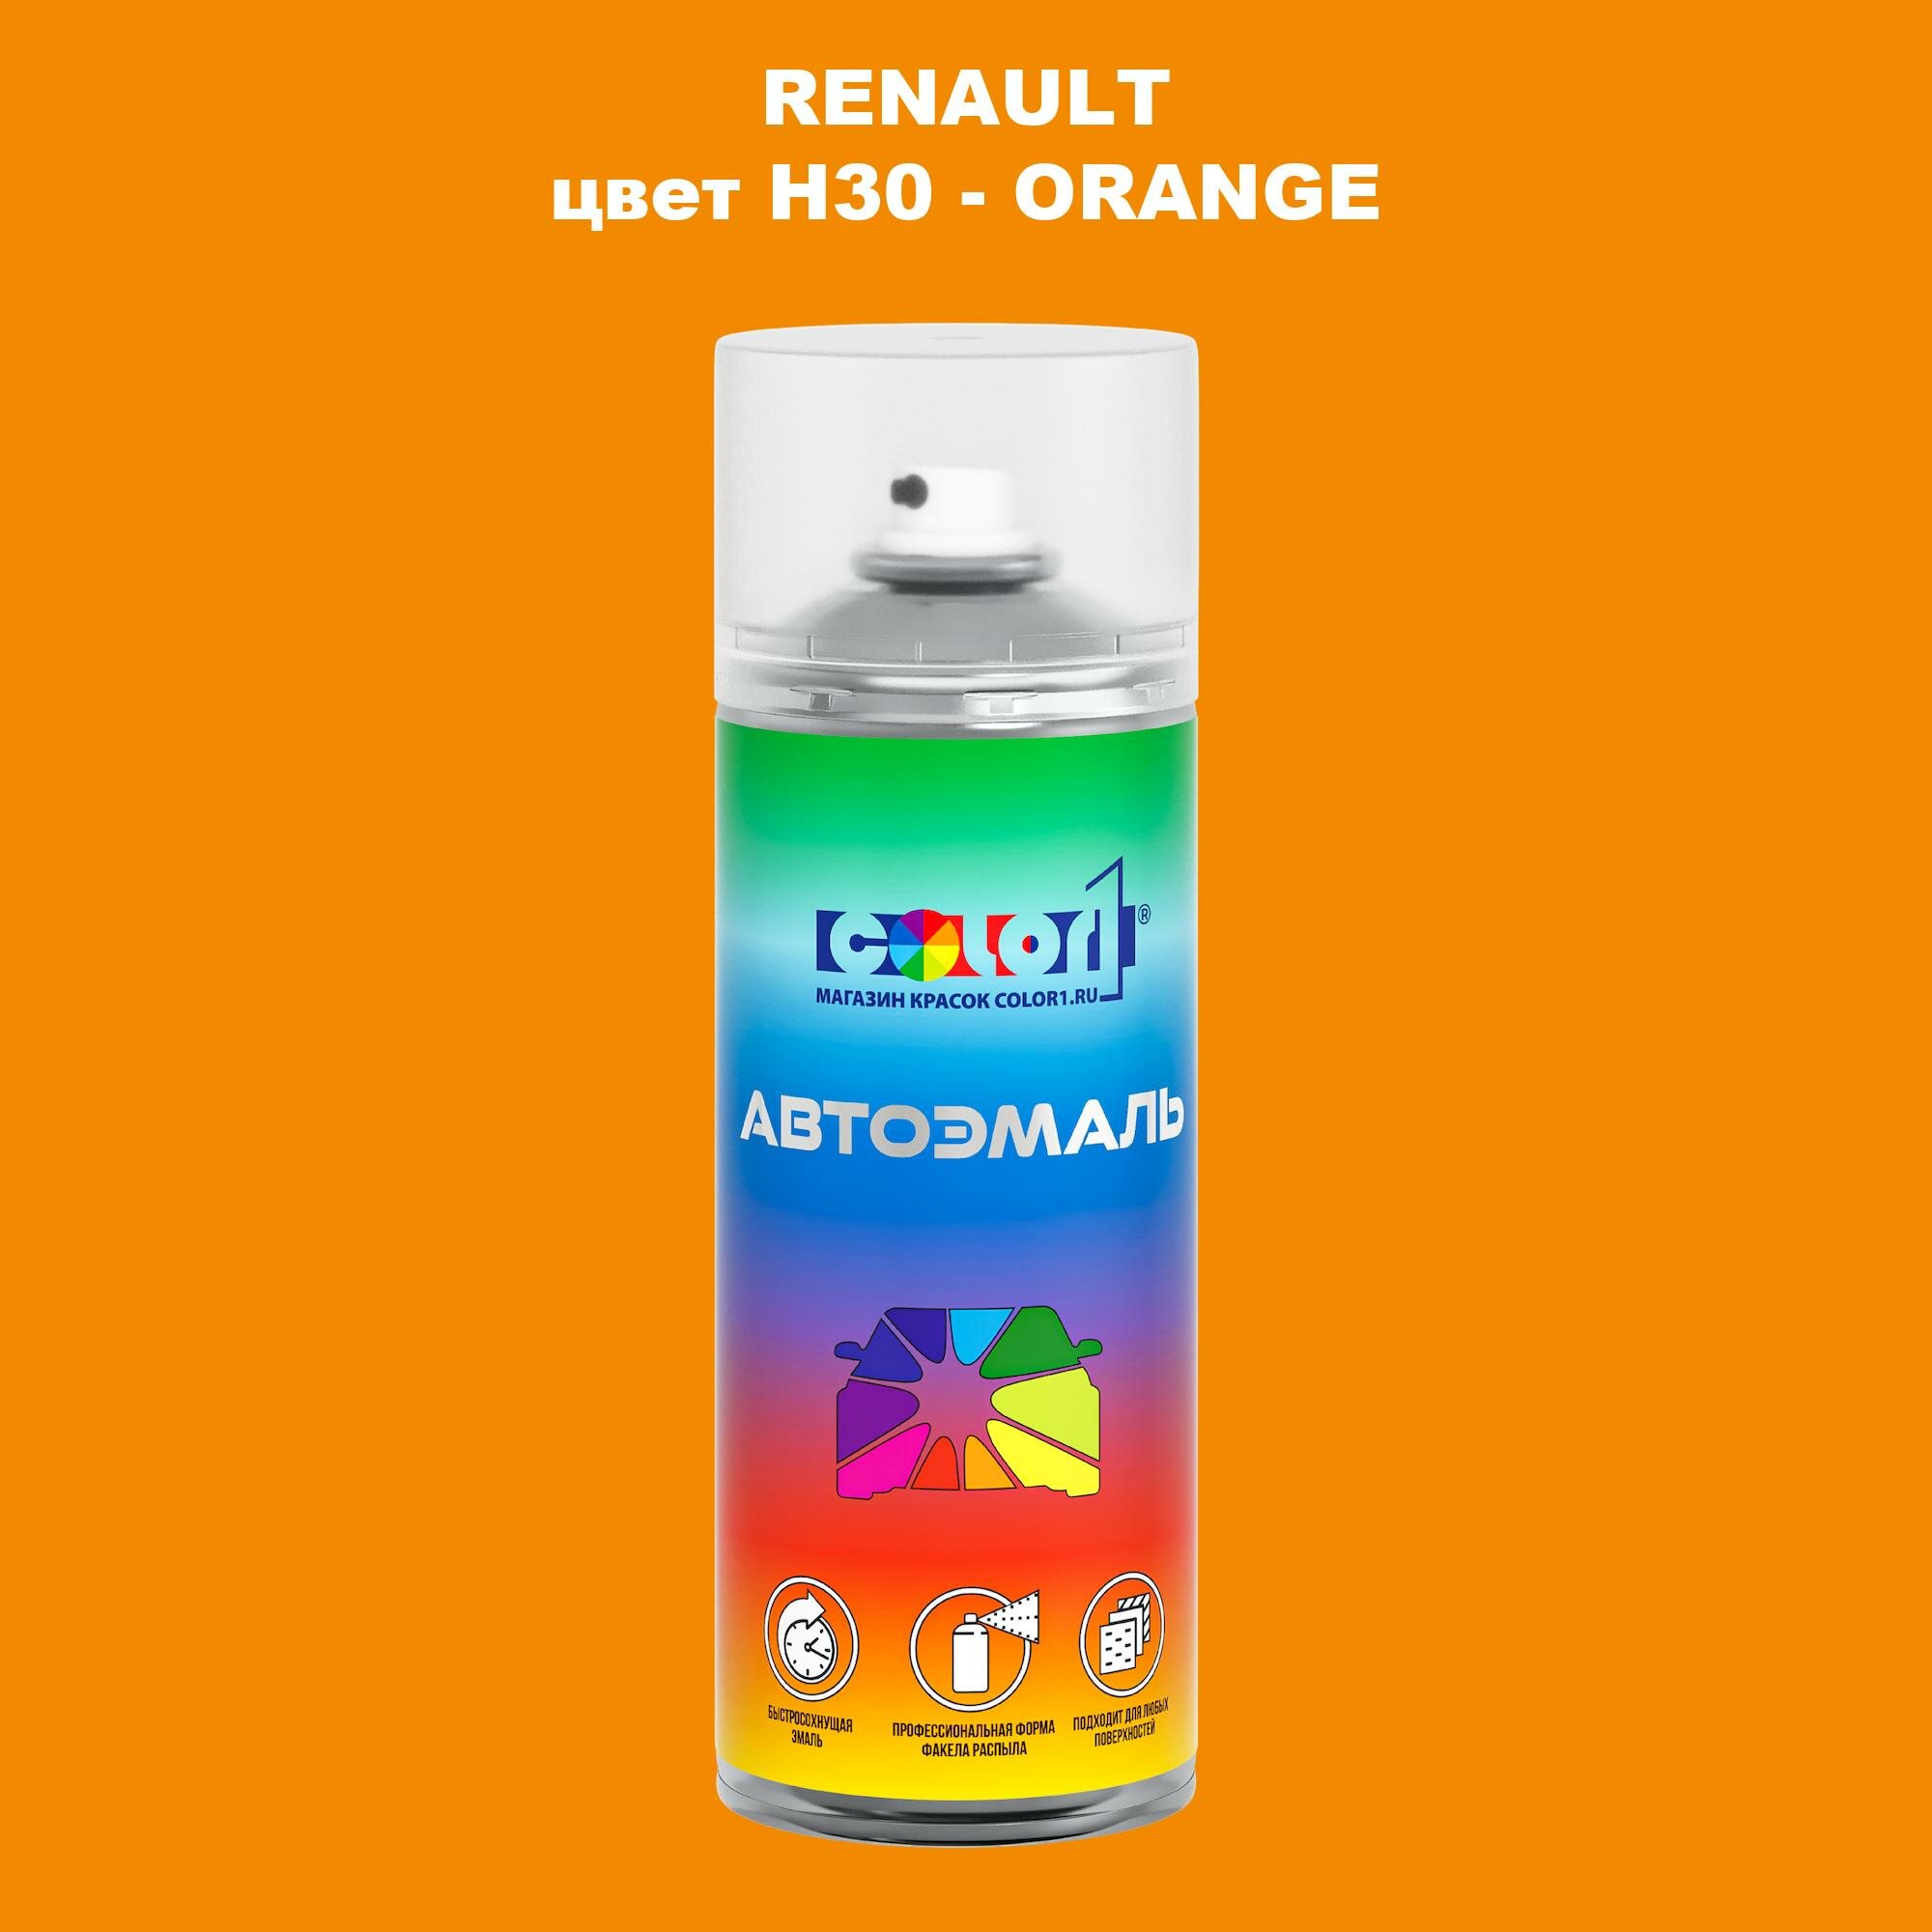 Аэрозольная краска COLOR1 для RENAULT, цвет H30 - ORANGE